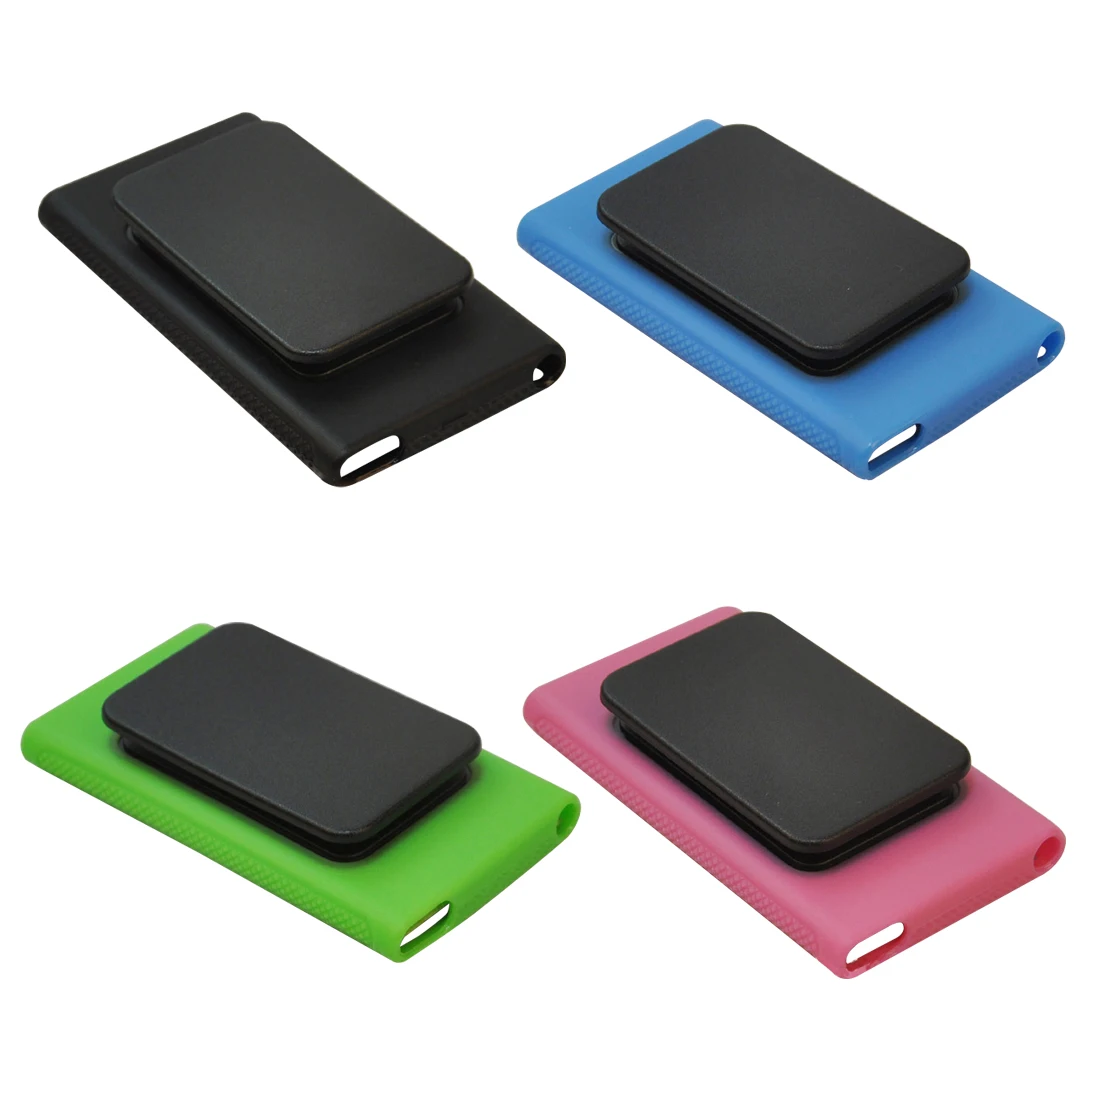 Etmakit карамельный цвет Тонкий Мягкий ТПУ силиконовый резиновый Кожаный чехол Чехол Держатель клип для iPod Nano 7 чехол с защитой экрана